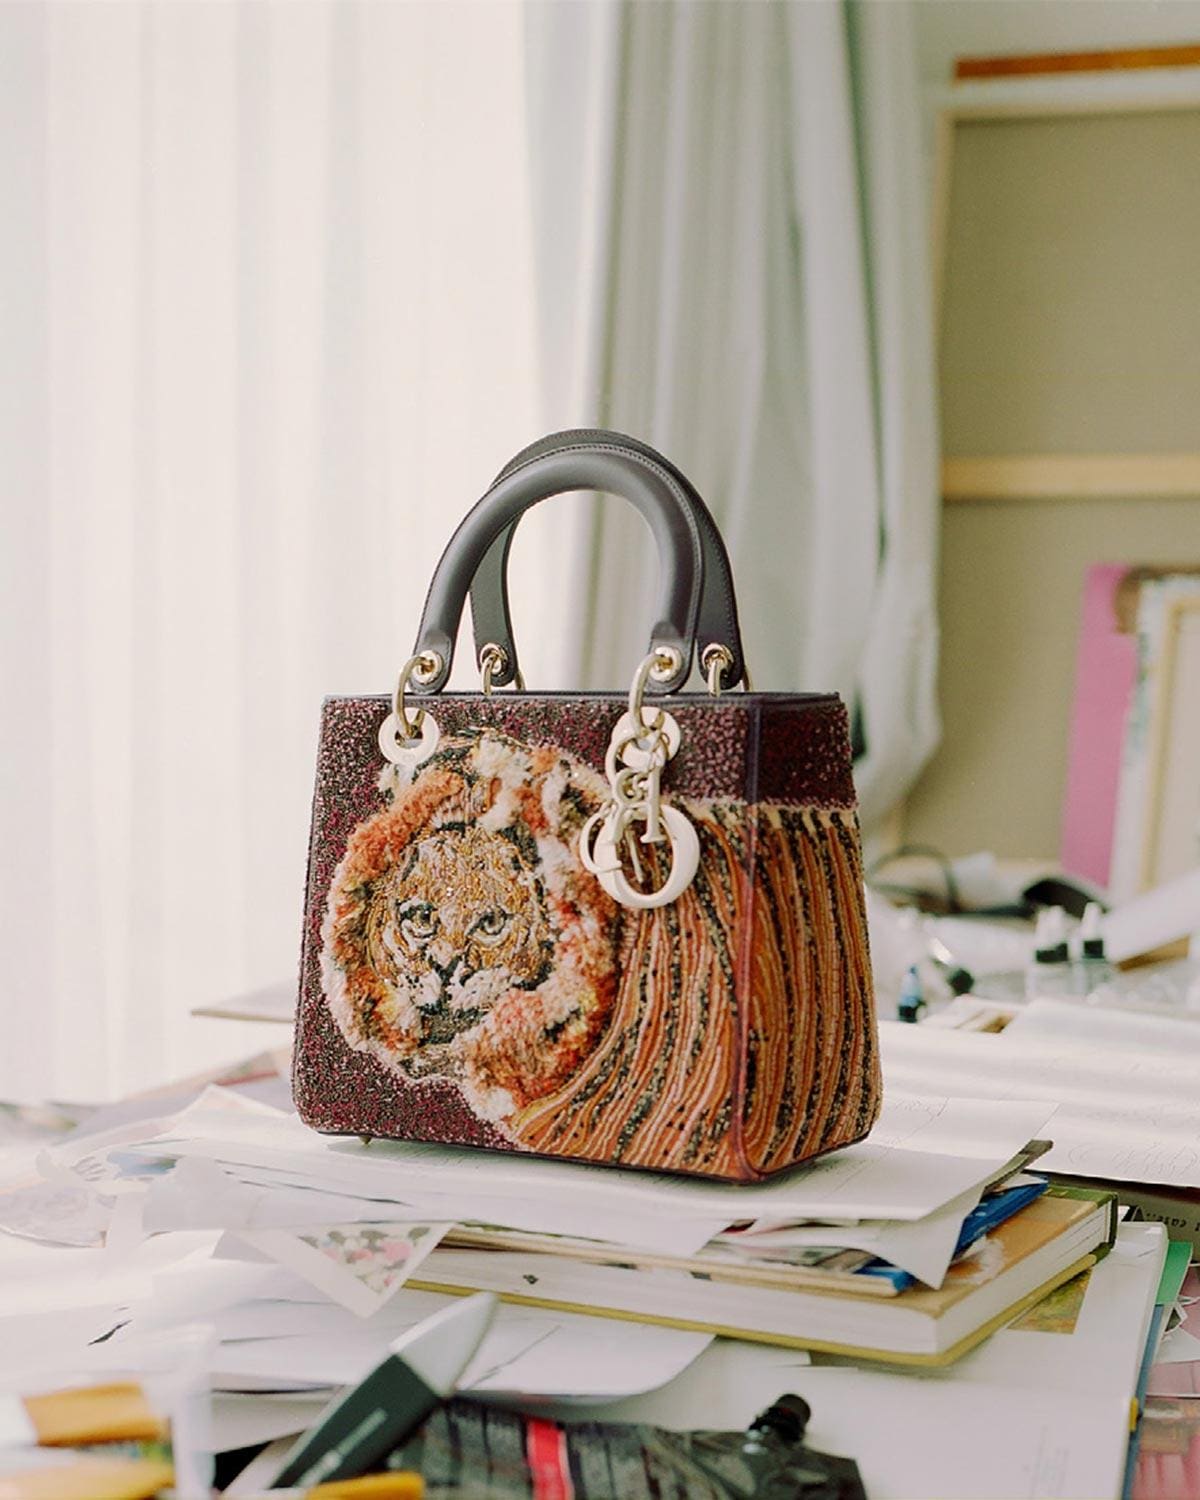 How Princess Diana inspired the Lady Dior handbag